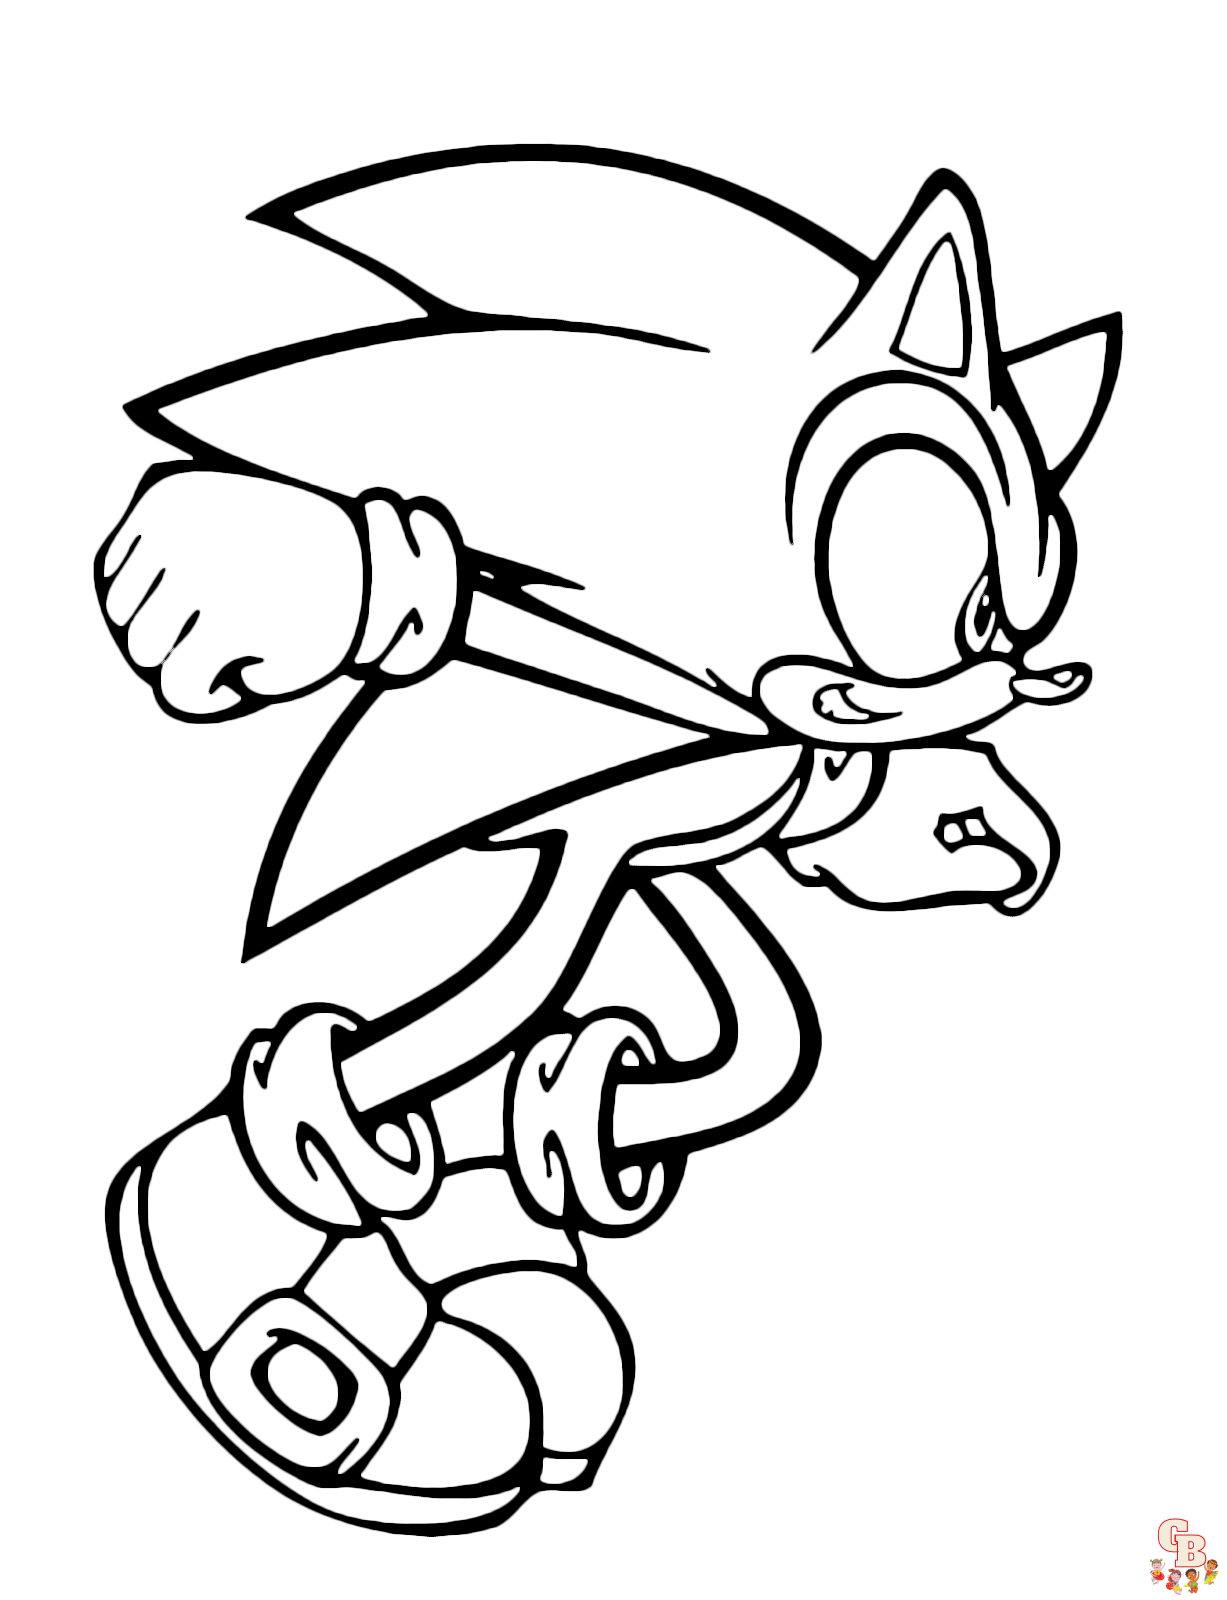 Sonic Boom está pronto para liberar sua velocidade supersônica